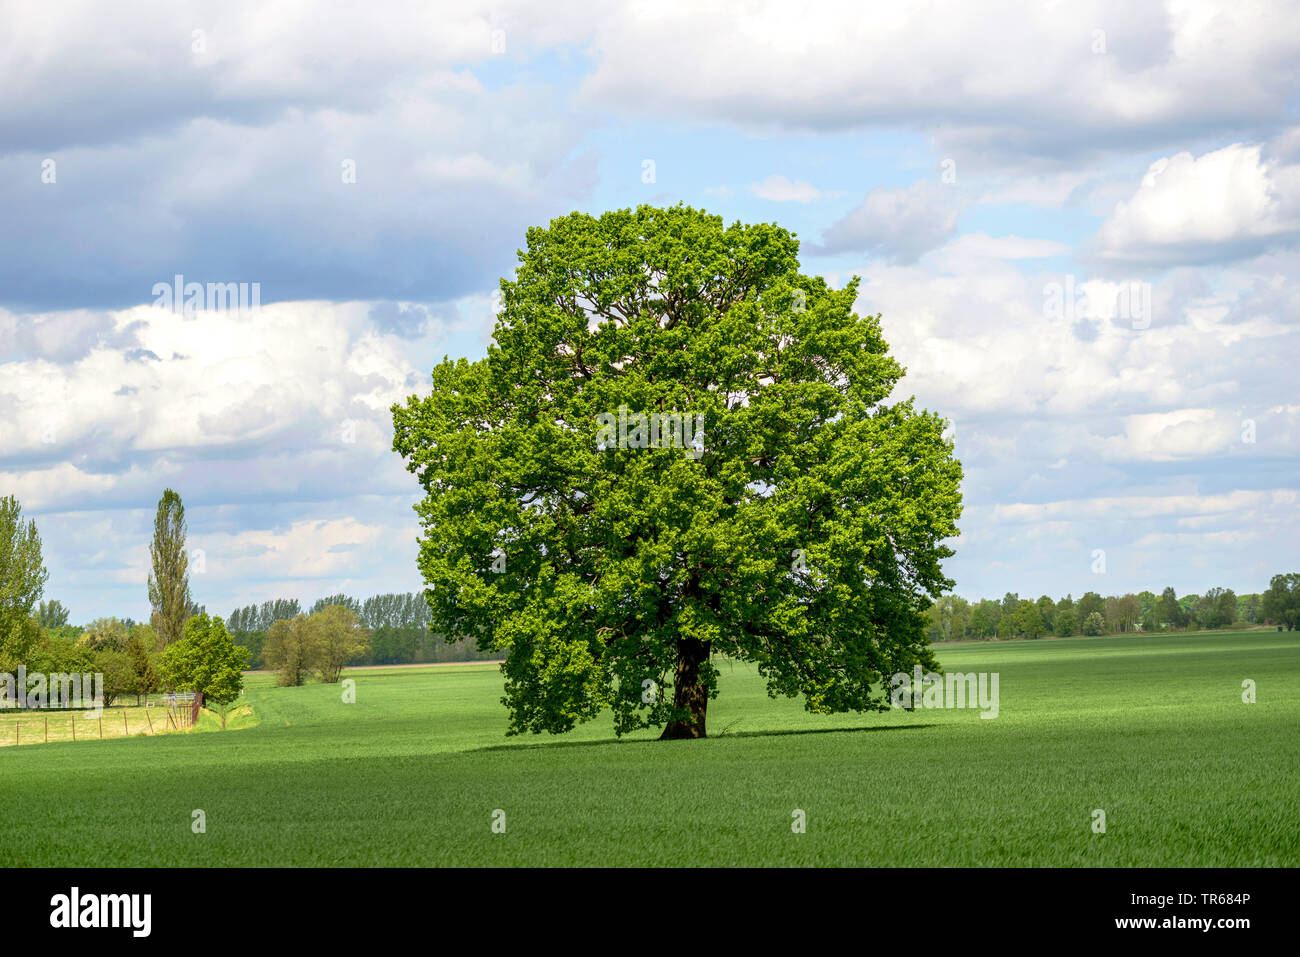 Gemeinsame Eiche, Pedunculate oak, Englischer Eiche (Quercus robur. "Quercus pedunculata"), einem Baum, auf einer Wiese, Deutschland, Brandenburg, Kruegersdorf Stockfoto